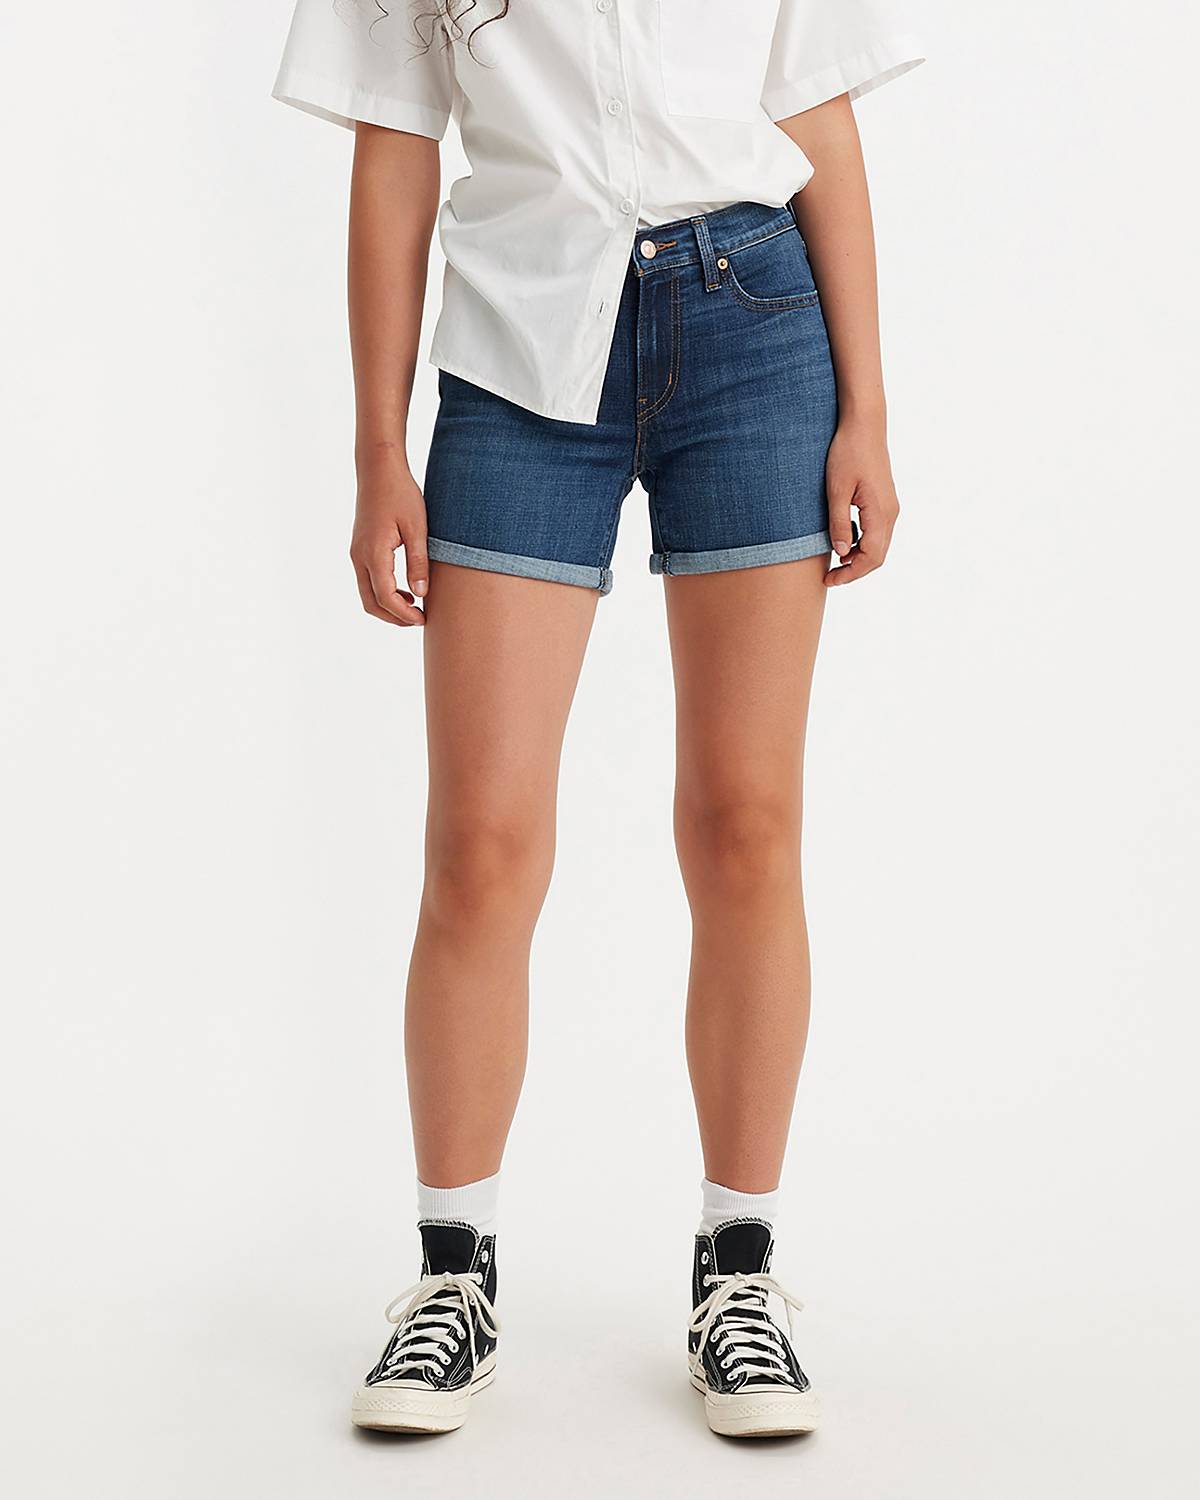 White Shorts - Shop White Denim Shorts for Women